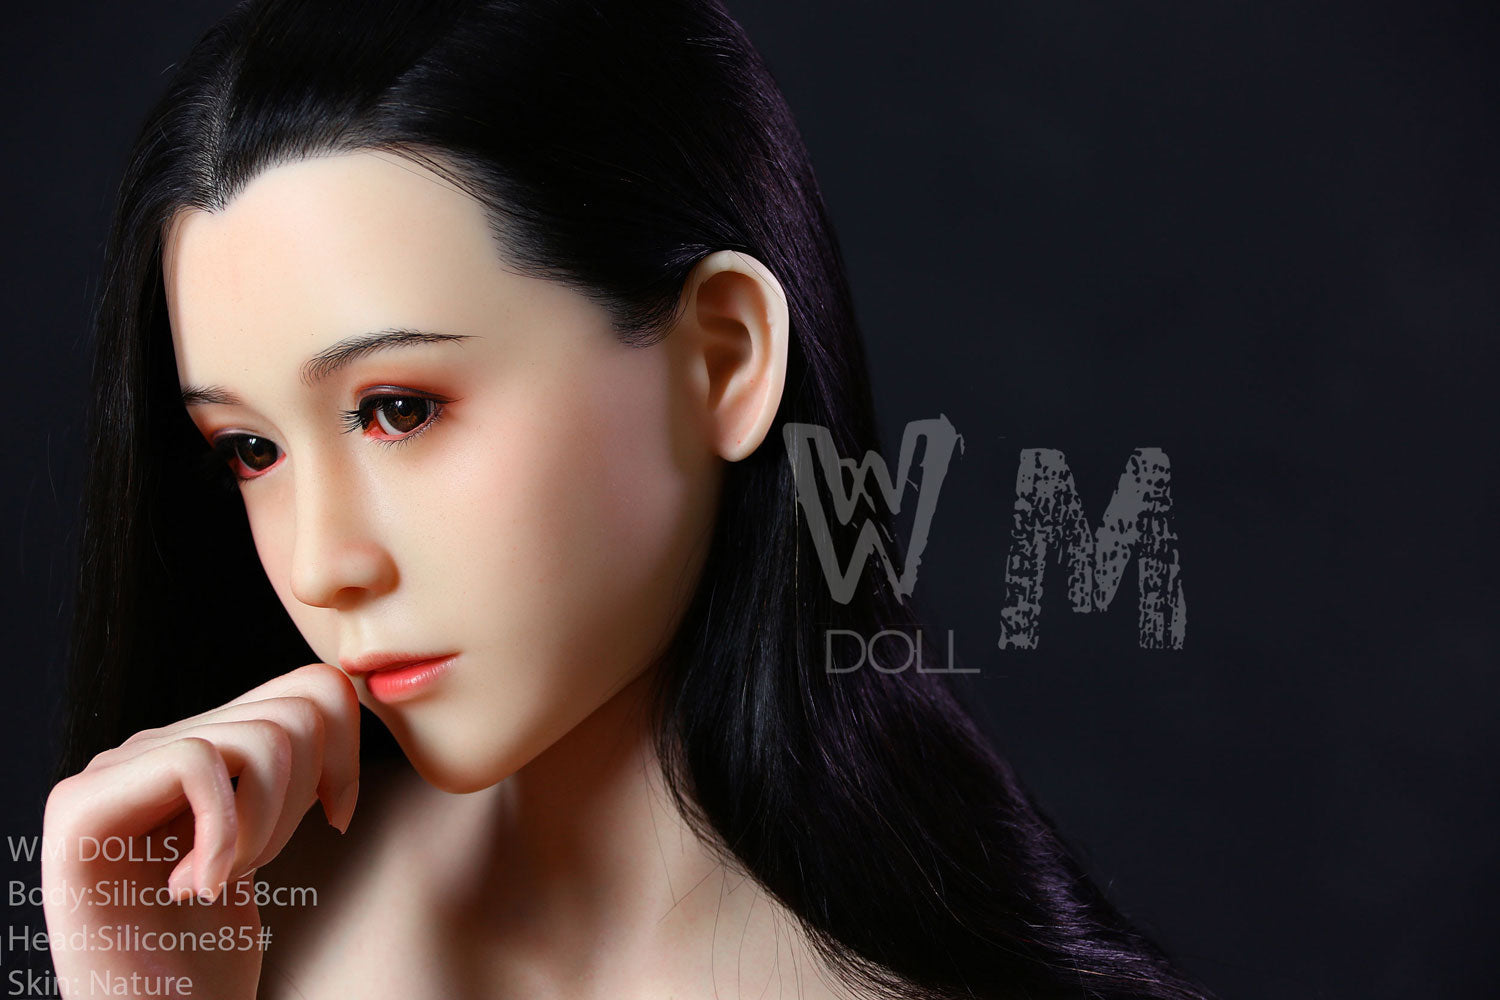 WM Doll 158 cm Silicone - Lara | Buy Sex Dolls at DOLLS ACTUALLY